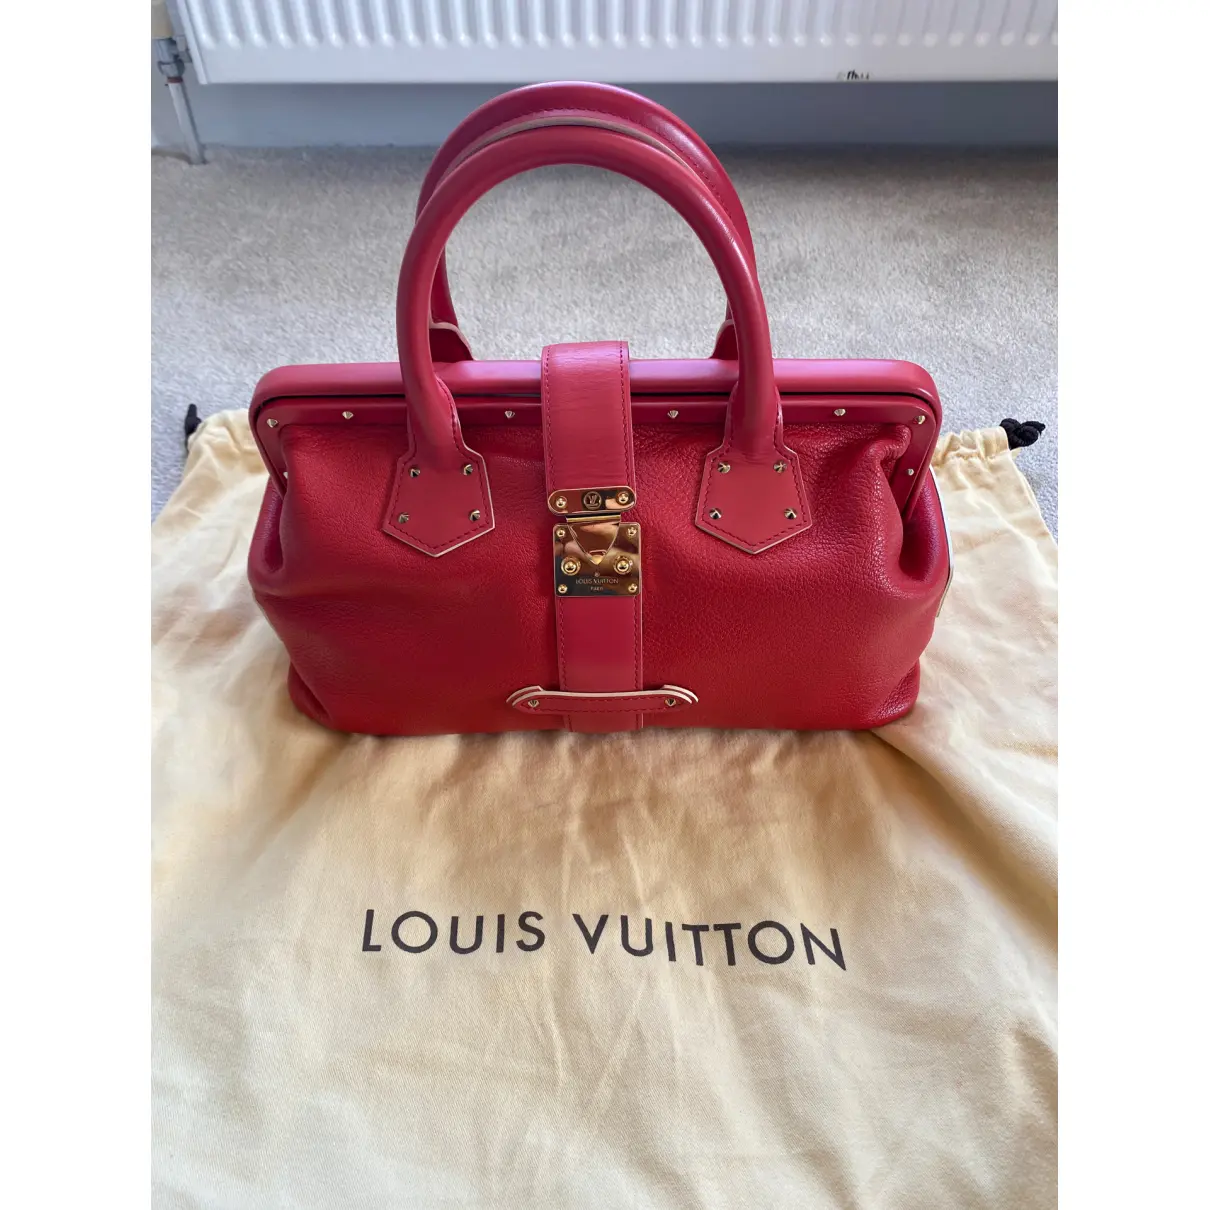 L'Ingénieux leather handbag Louis Vuitton